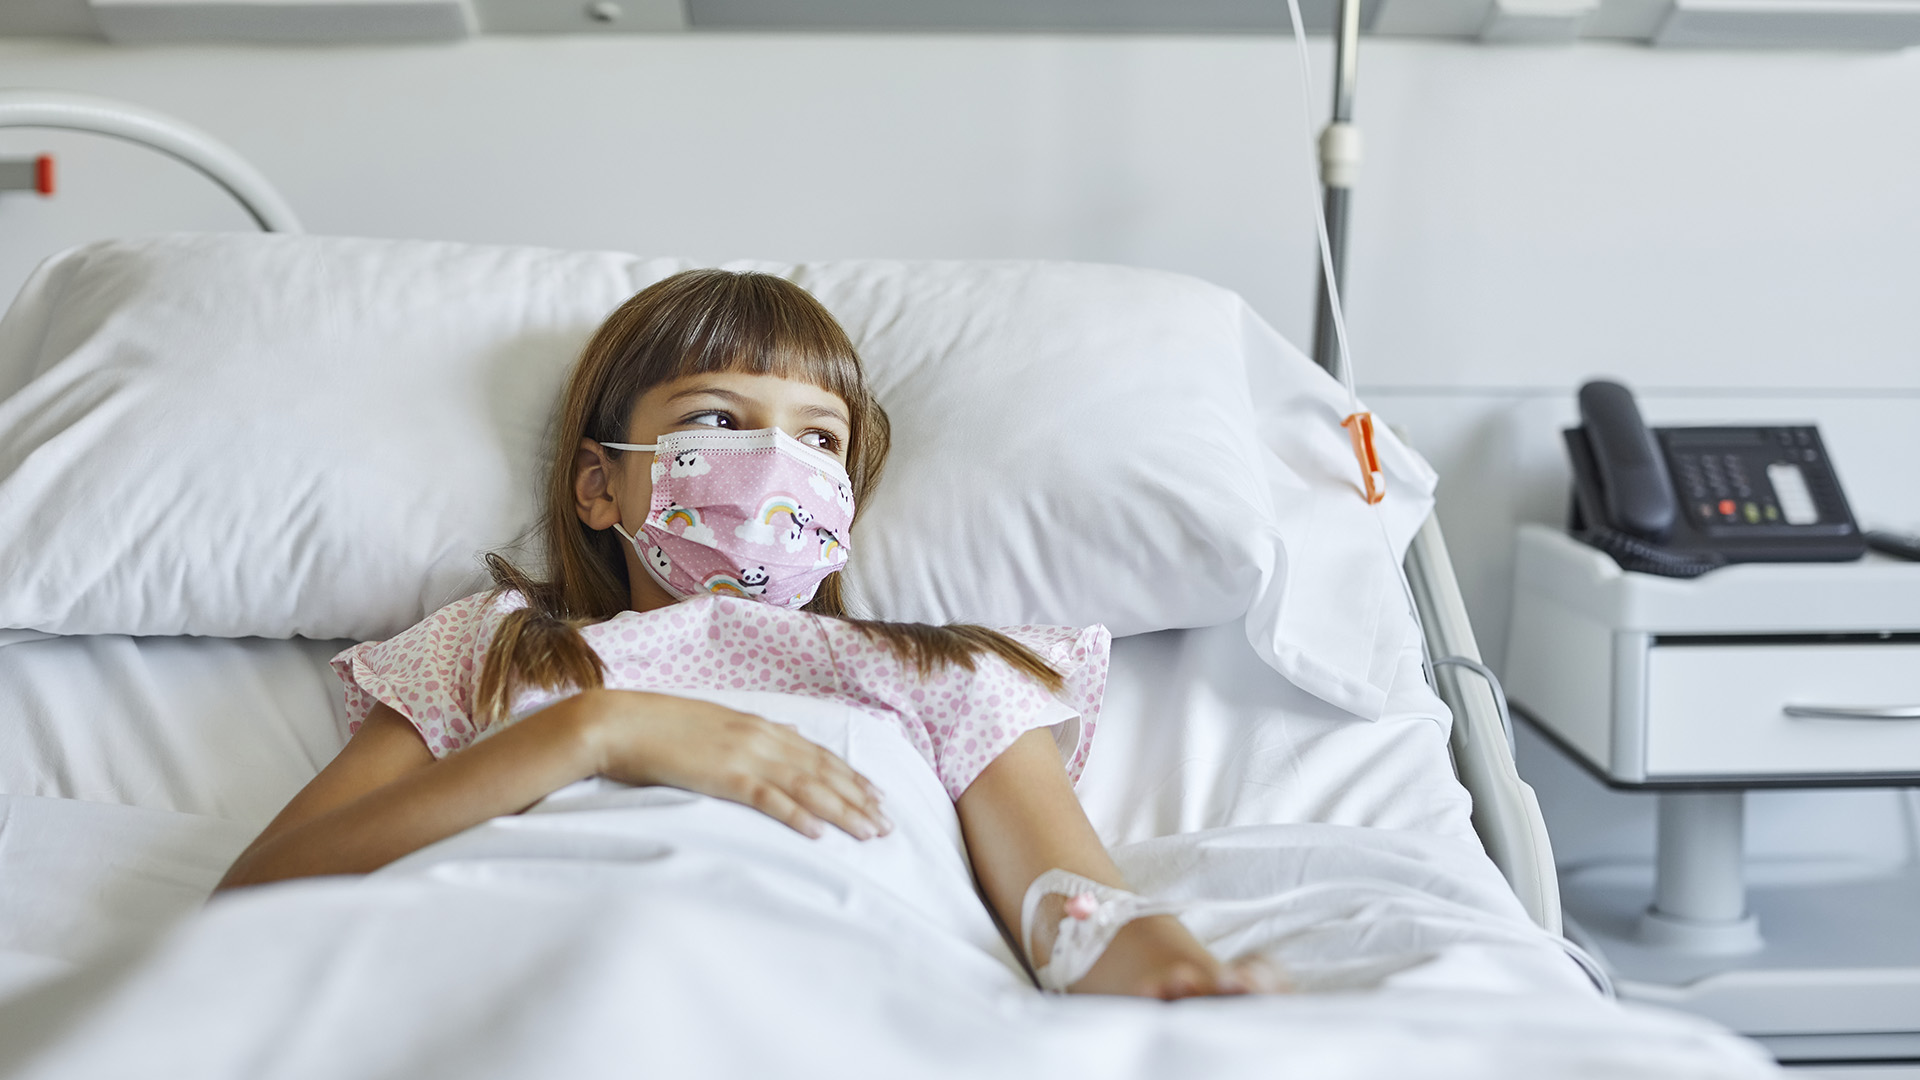 Los hallazgos podrían mejorar el diagnóstico, el seguimiento y el tratamiento de la enfermedad en niños (Getty Images)